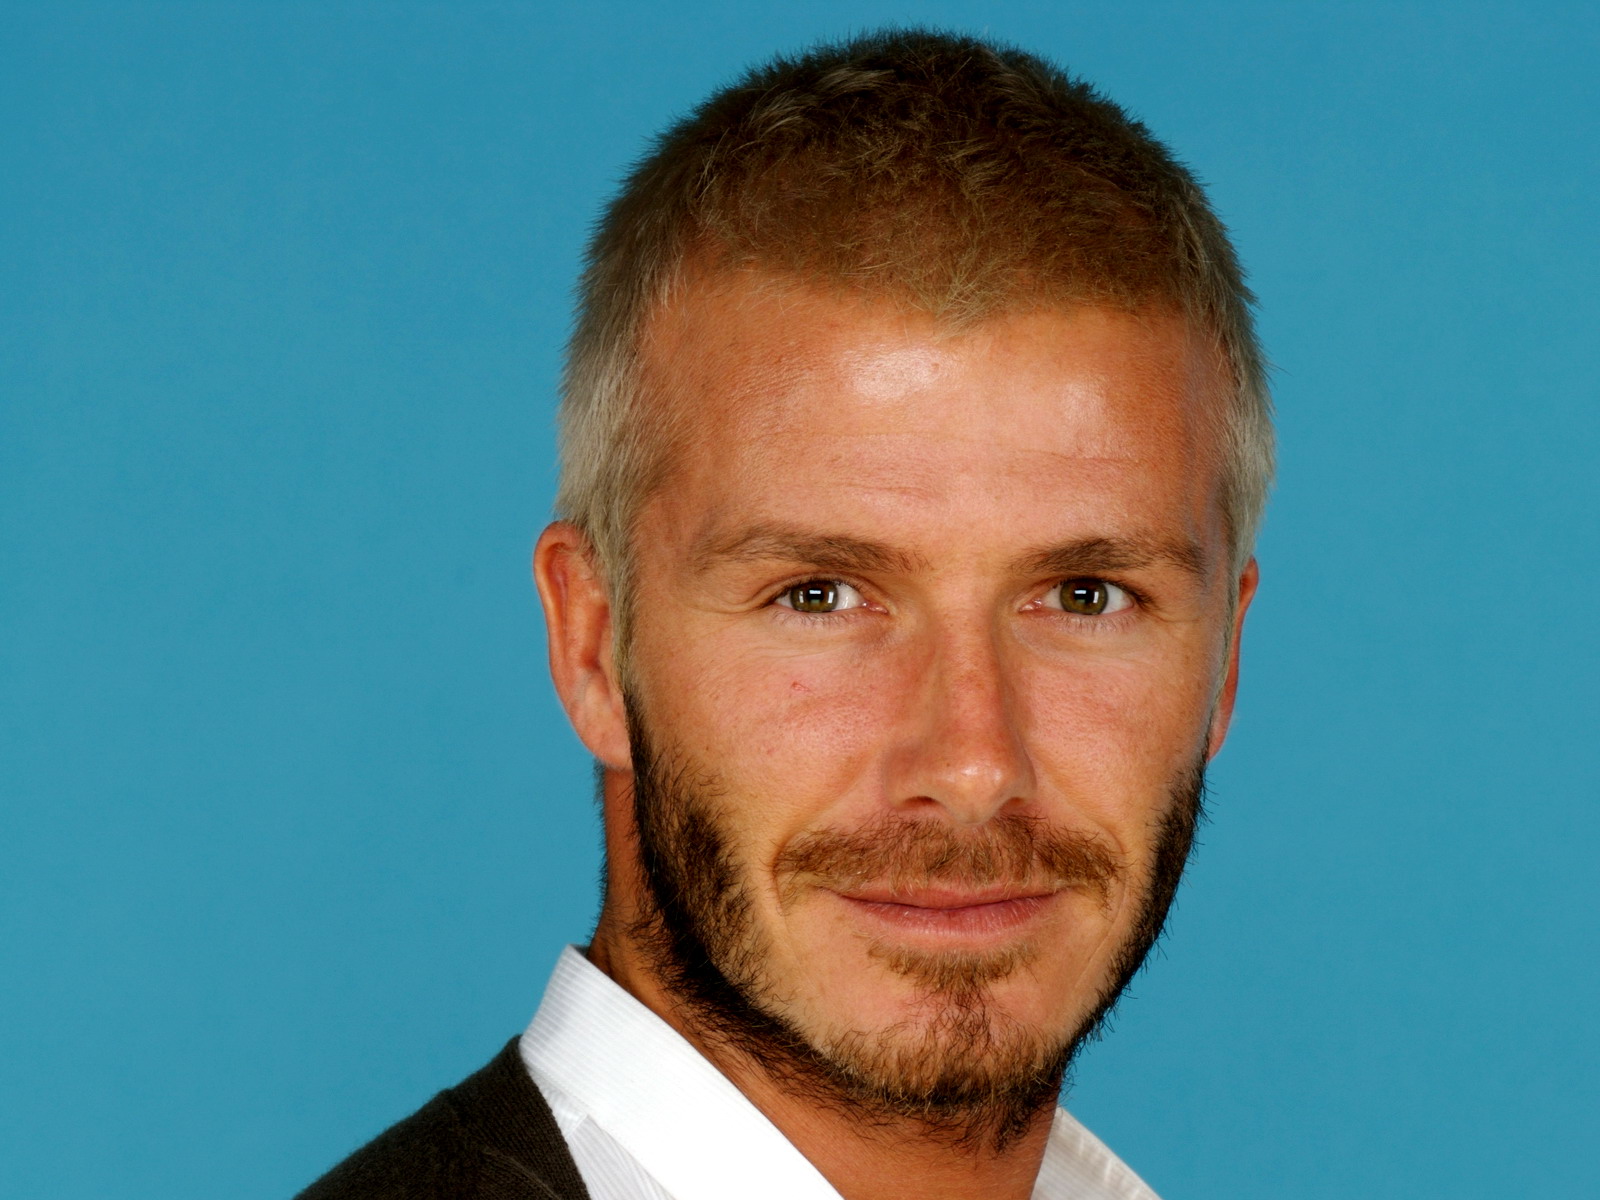 David Beckham Beard , HD Wallpaper & Backgrounds